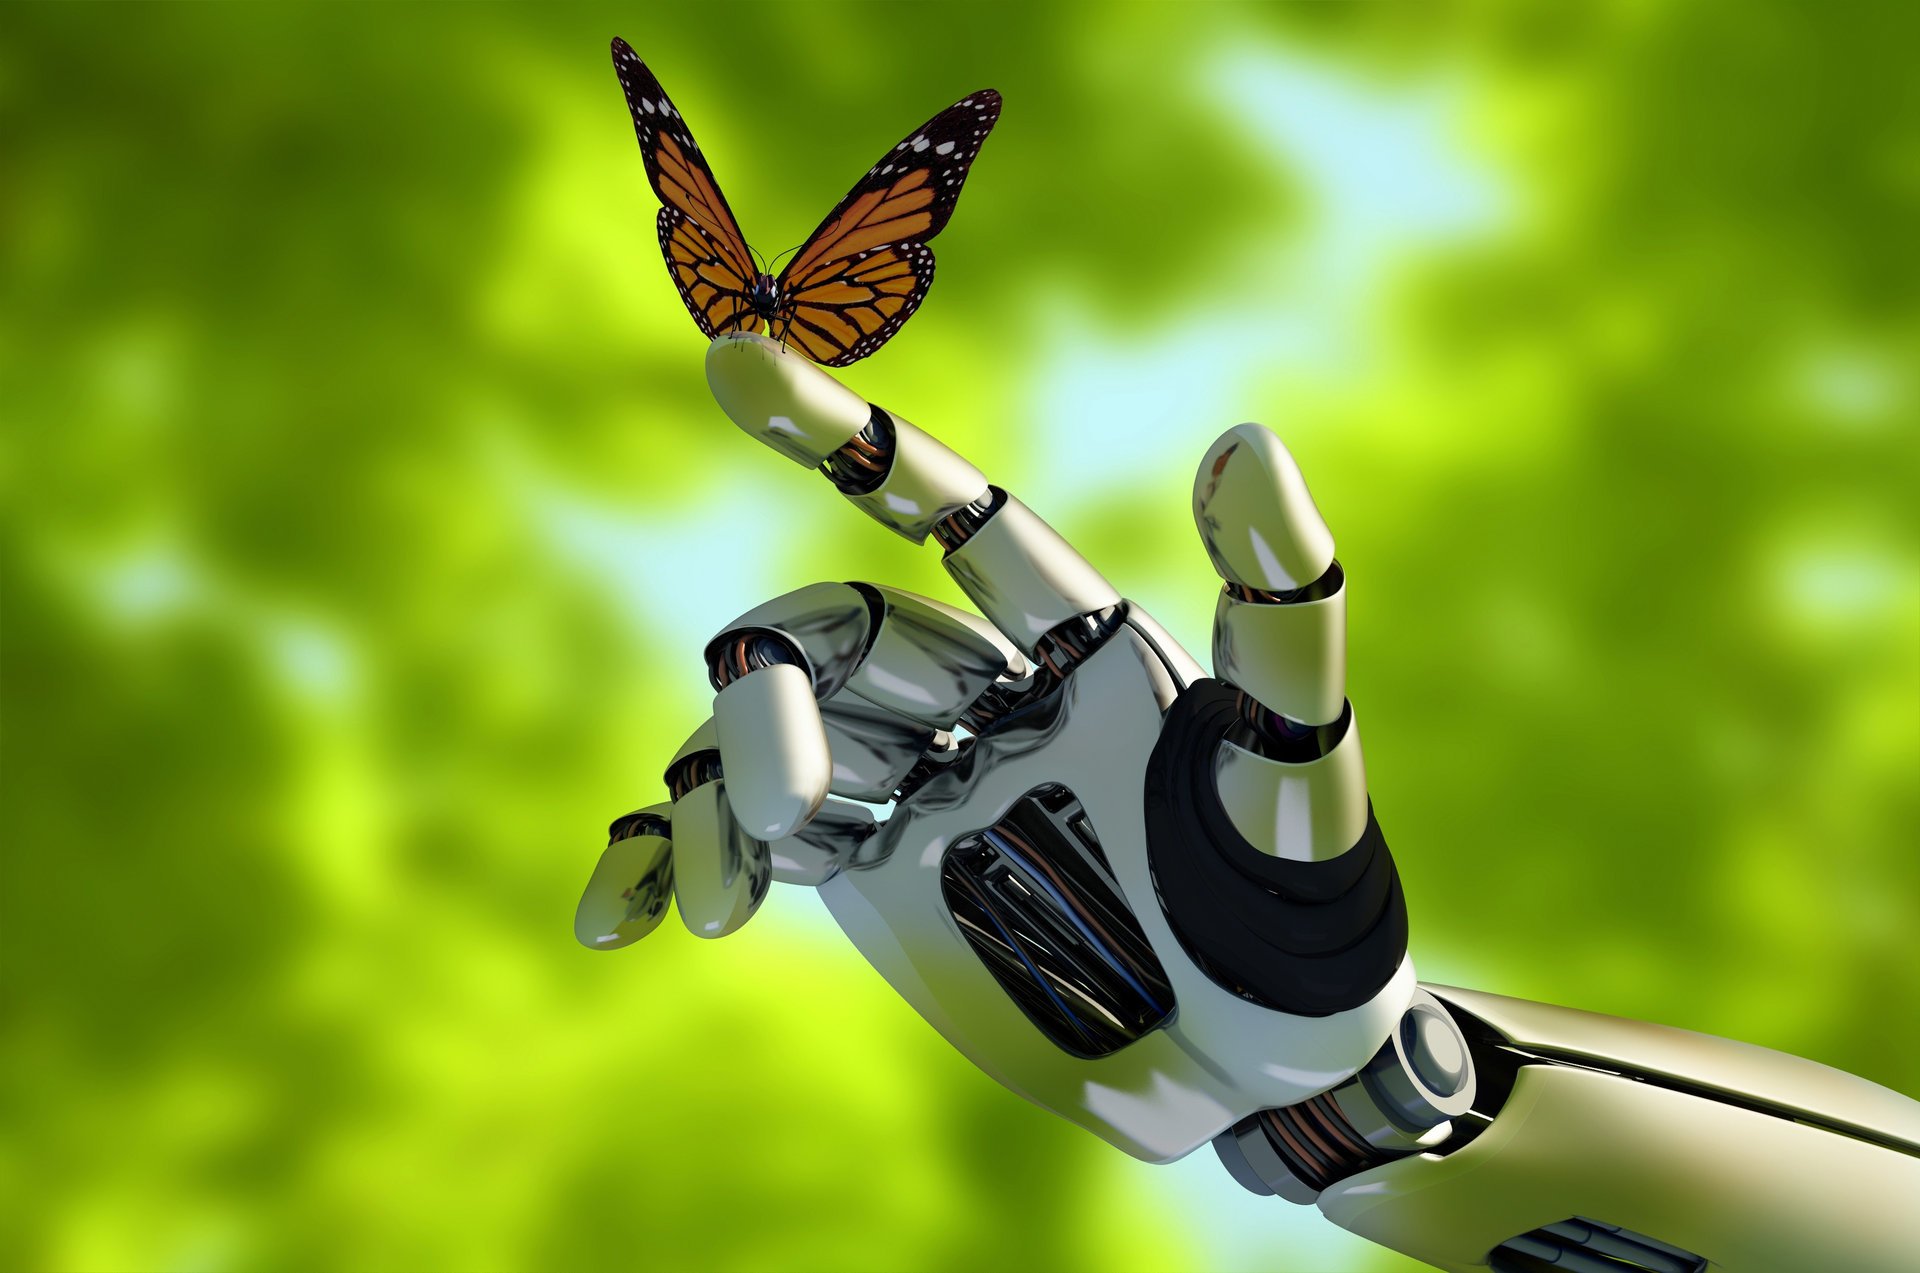 привет-тек технологии робот механизм андроид android природа рука контакт бабочка красивый фон зеленый фон размытость боке макро обои